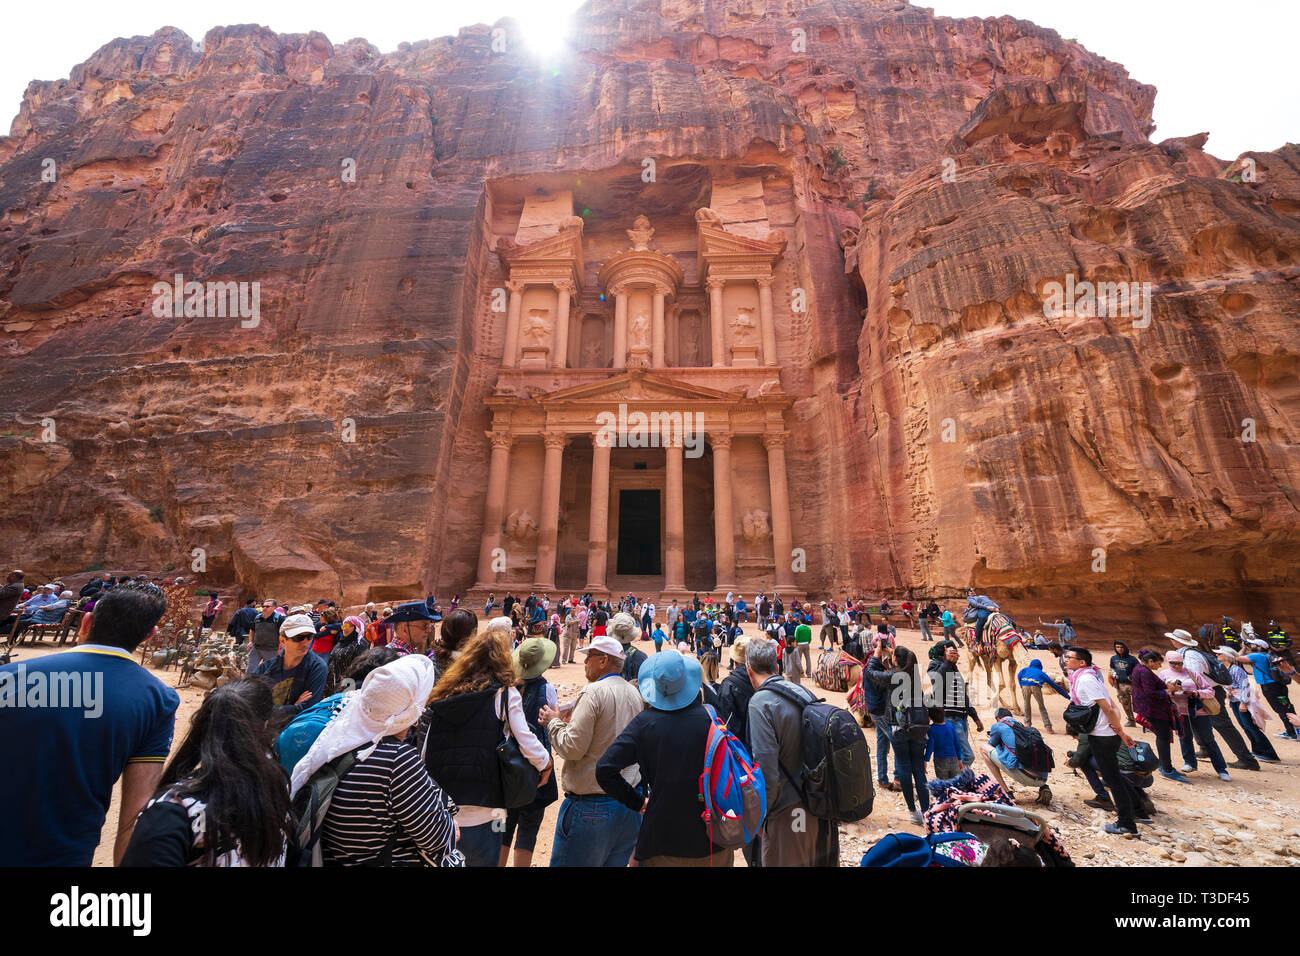 Le tourisme de masse dans le Trésor (Al khazneh), à Petra, Jordanie, Site du patrimoine mondial de l'UNESCO Banque D'Images